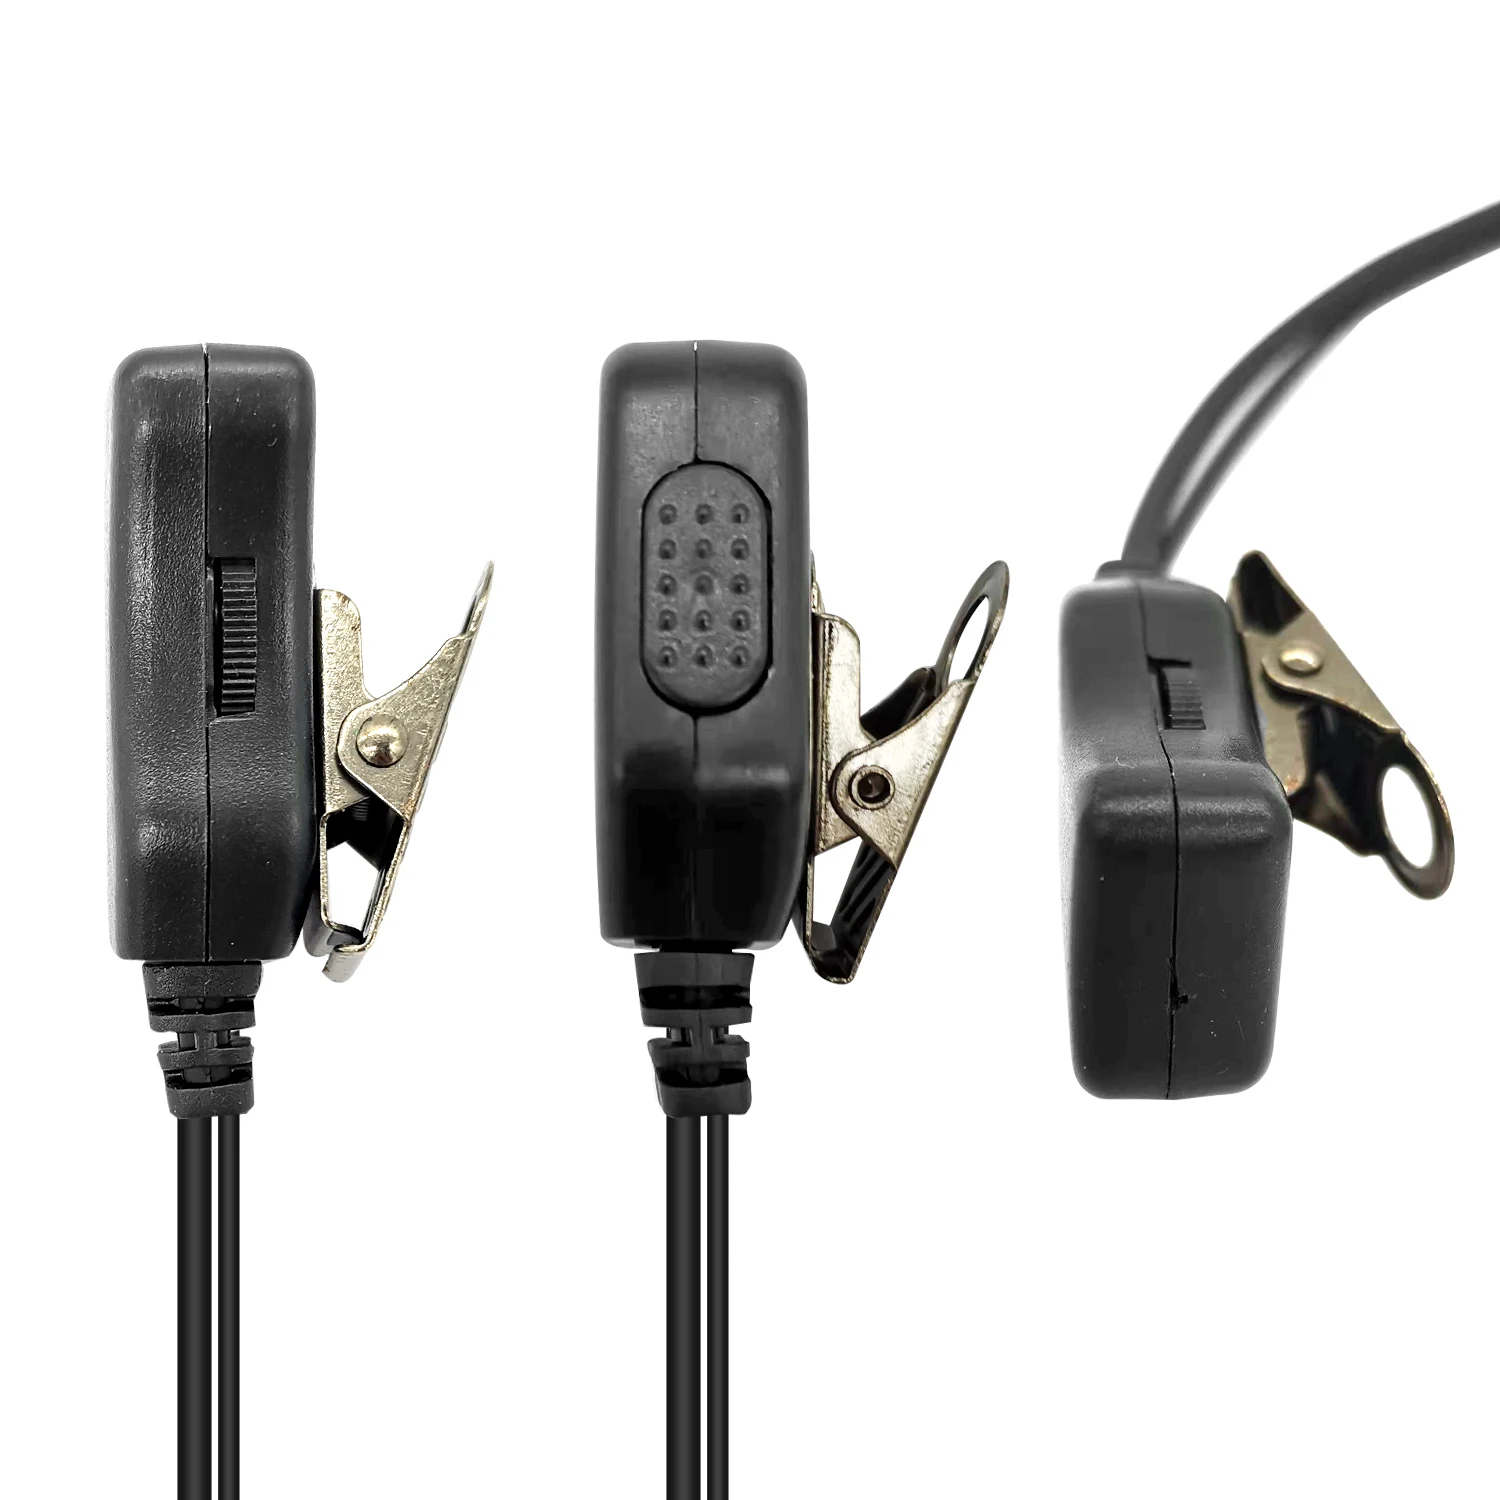 walkie talkie headset Earpiece for baofeng BF-T3, BF-888S, BF-F8HP, BF-F9, BF-F9 V2+, RD-5R two way radios enlarge